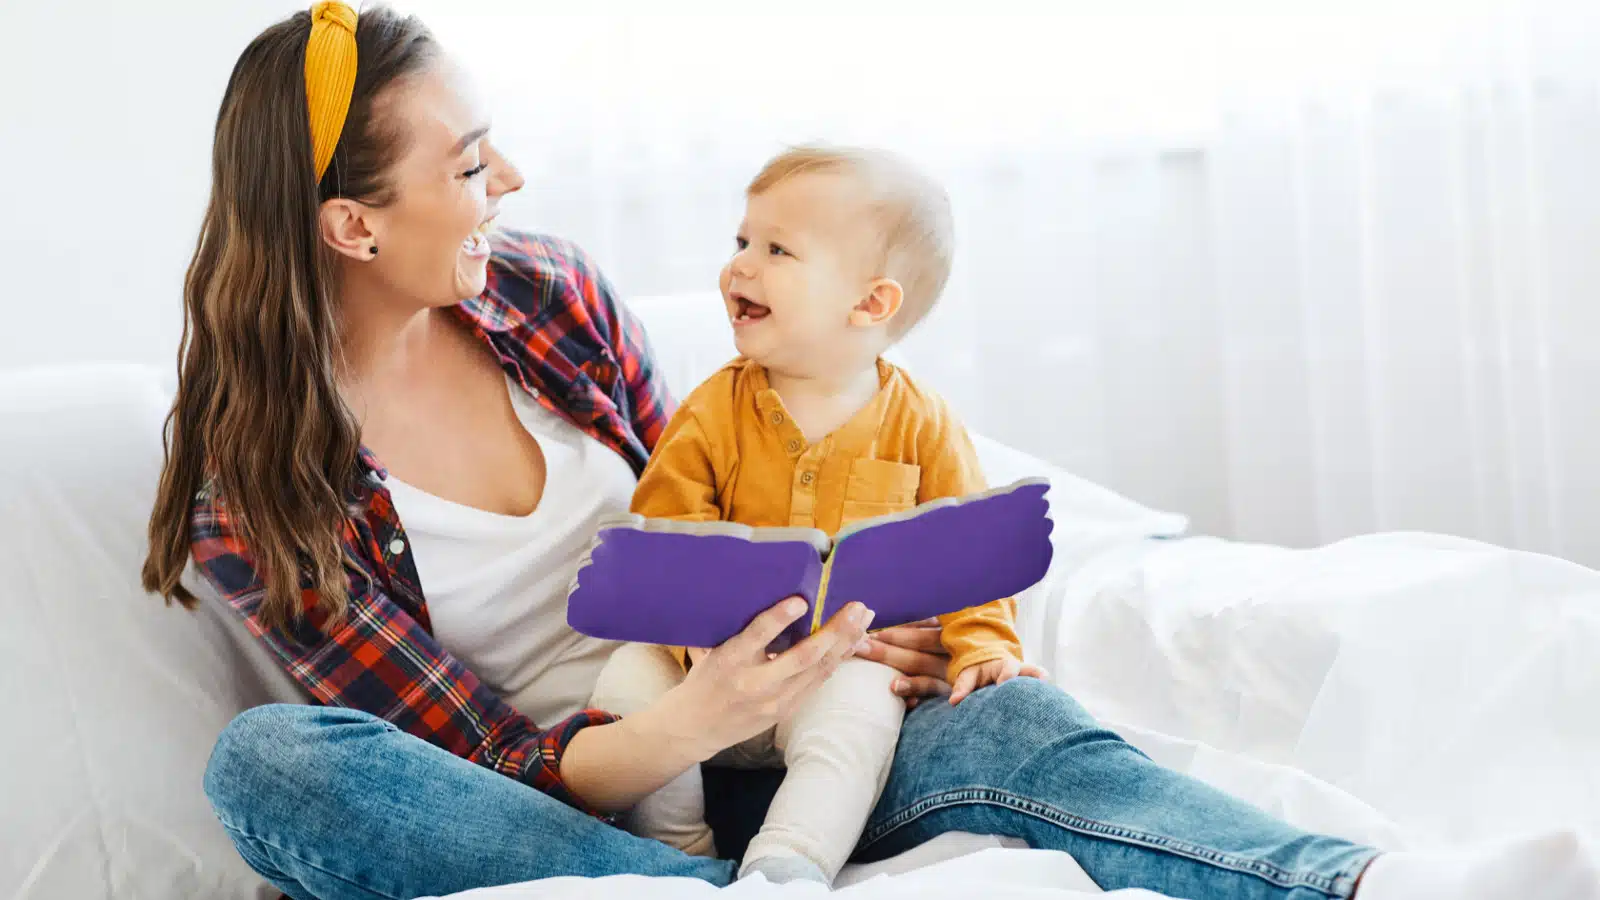 Lettura condivisa caregiver-bambino: gli effetti sulla regolazione emotiva